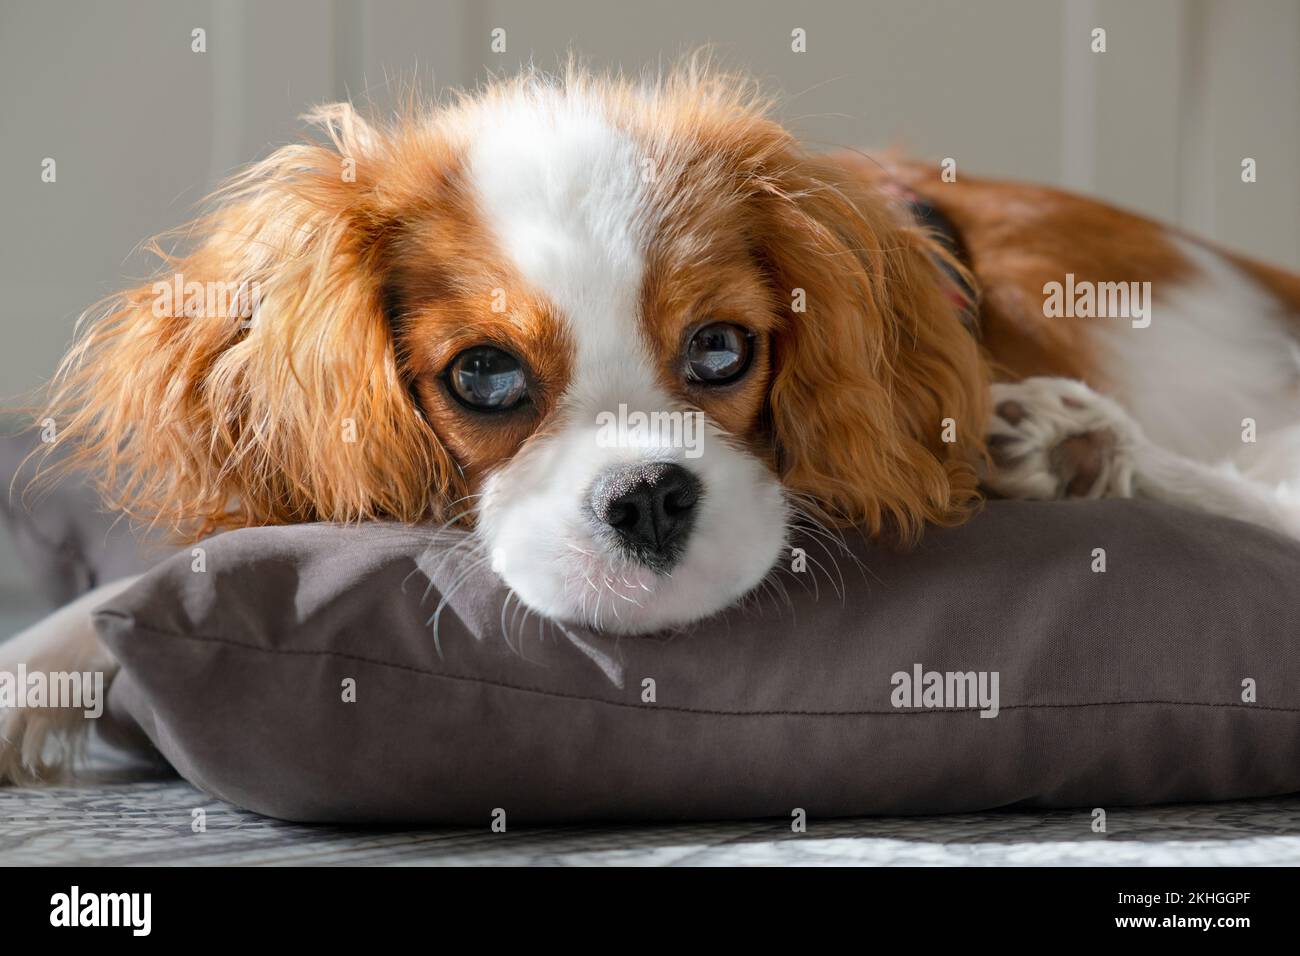 Primo piano ritratto del cucciolo di cane carino guardando la fotocamera. Cavalier. Piccolo cane di lana rossa si trova su un cuscino grigio. Concetto clinica veterinaria o animale fe Foto Stock